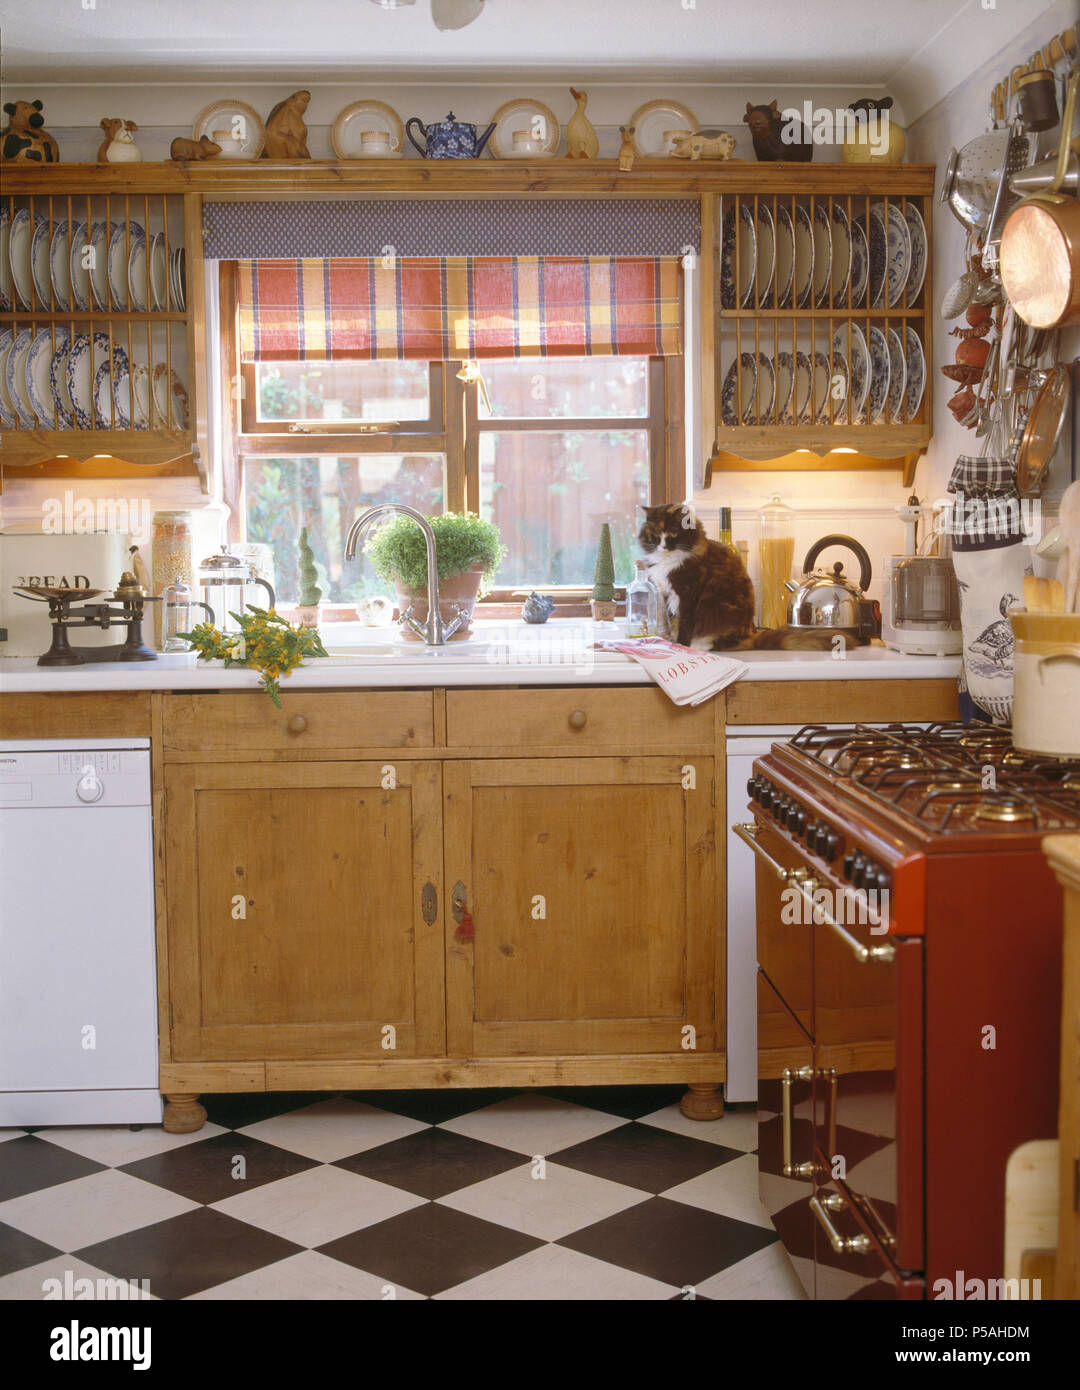 Holzteller - Regale auf beiden Seiten der Fenster mit roten Vorhang über dem Waschbecken in der Cottage Küche mit Schwarz + Weiß Chequer board Stock Stockfoto